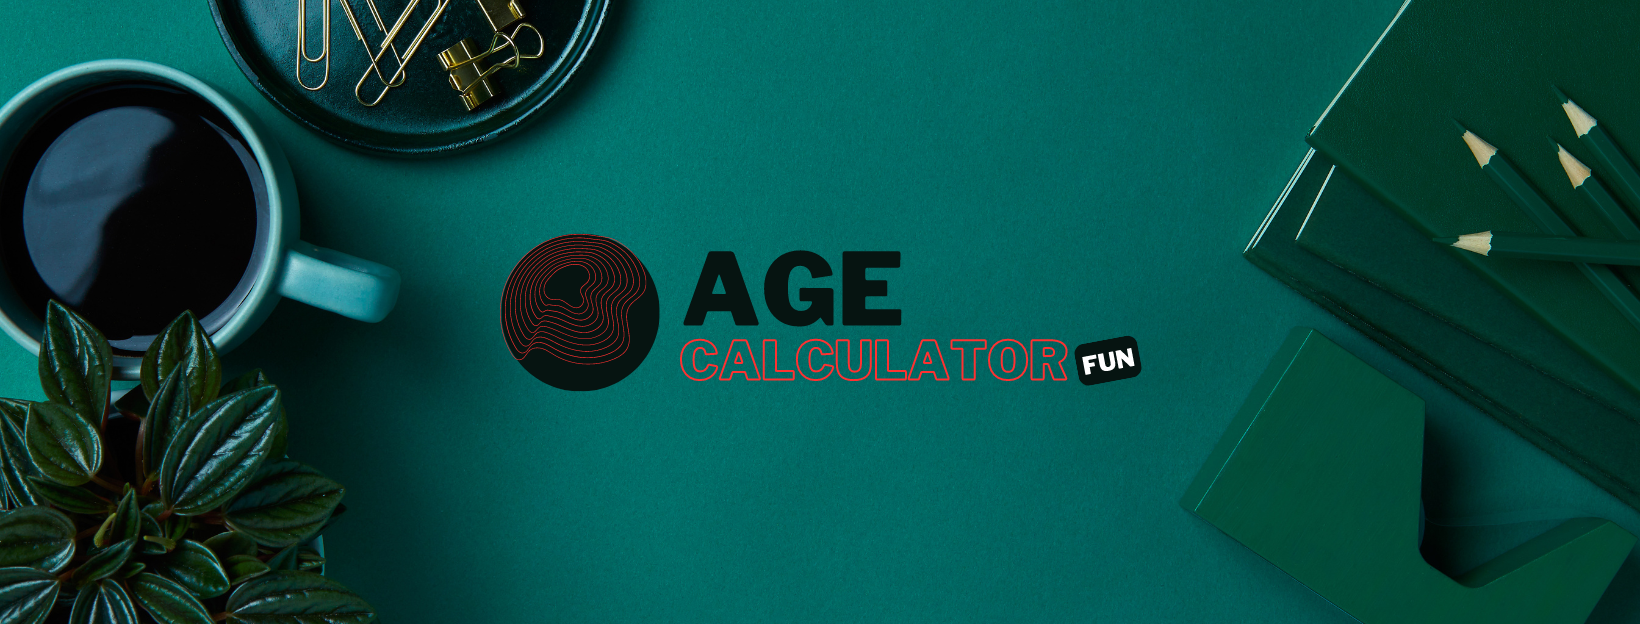 Age Calculator Fun - Age Calc